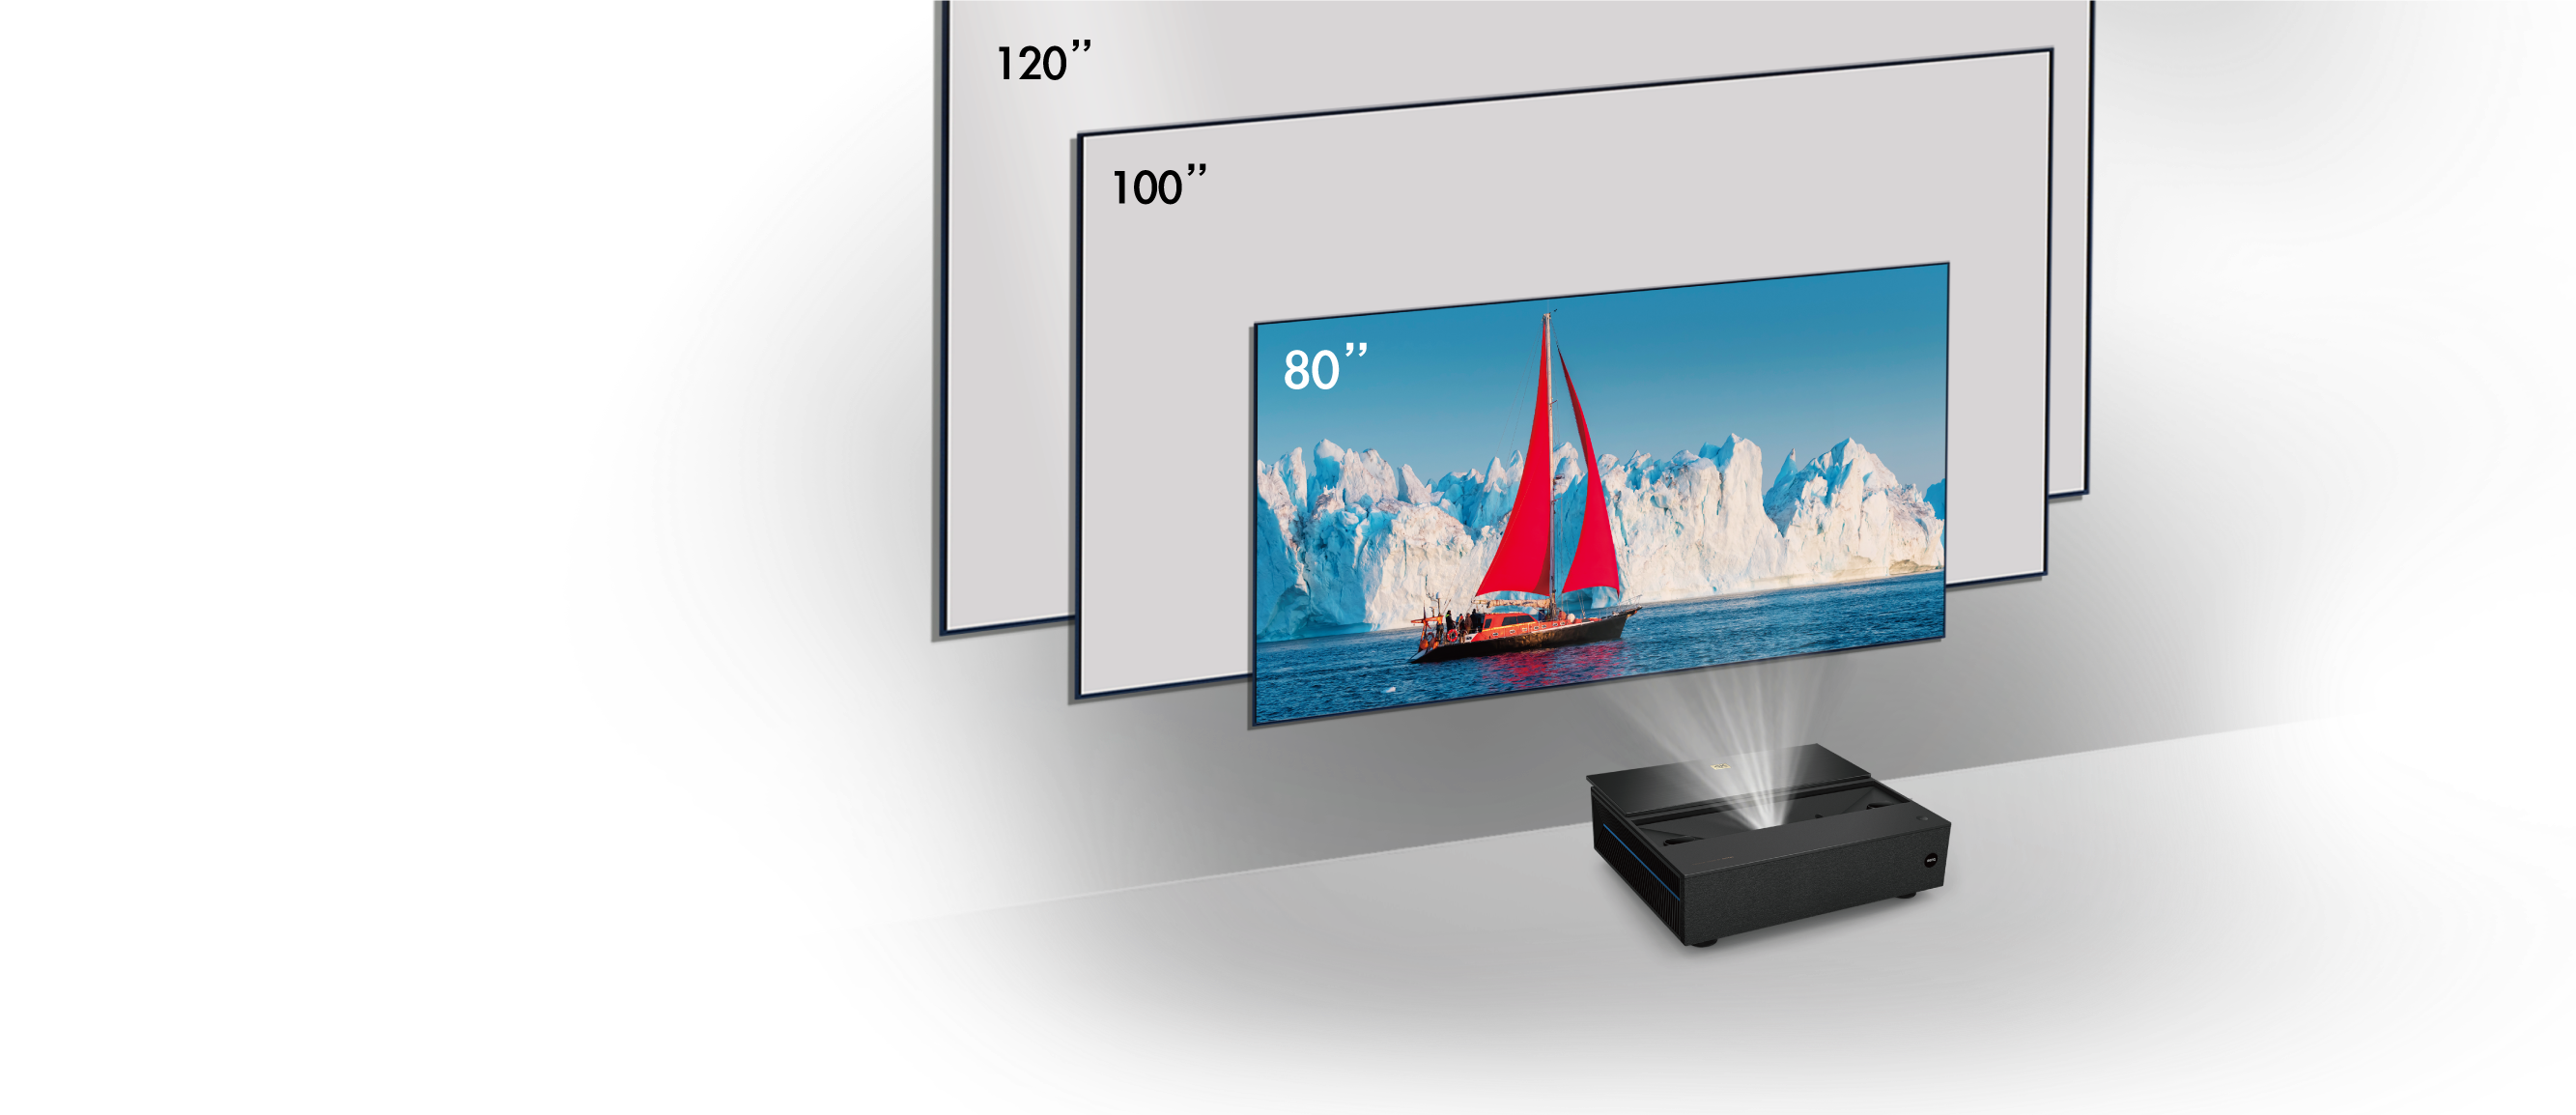 BenQ Proiector inteligent home cinema Laser 4K cu distanţă ultra-scurtă de proiecţie cu 98% din gama DCI-P3, HDR-PRO, Android TV | V7050i negru 